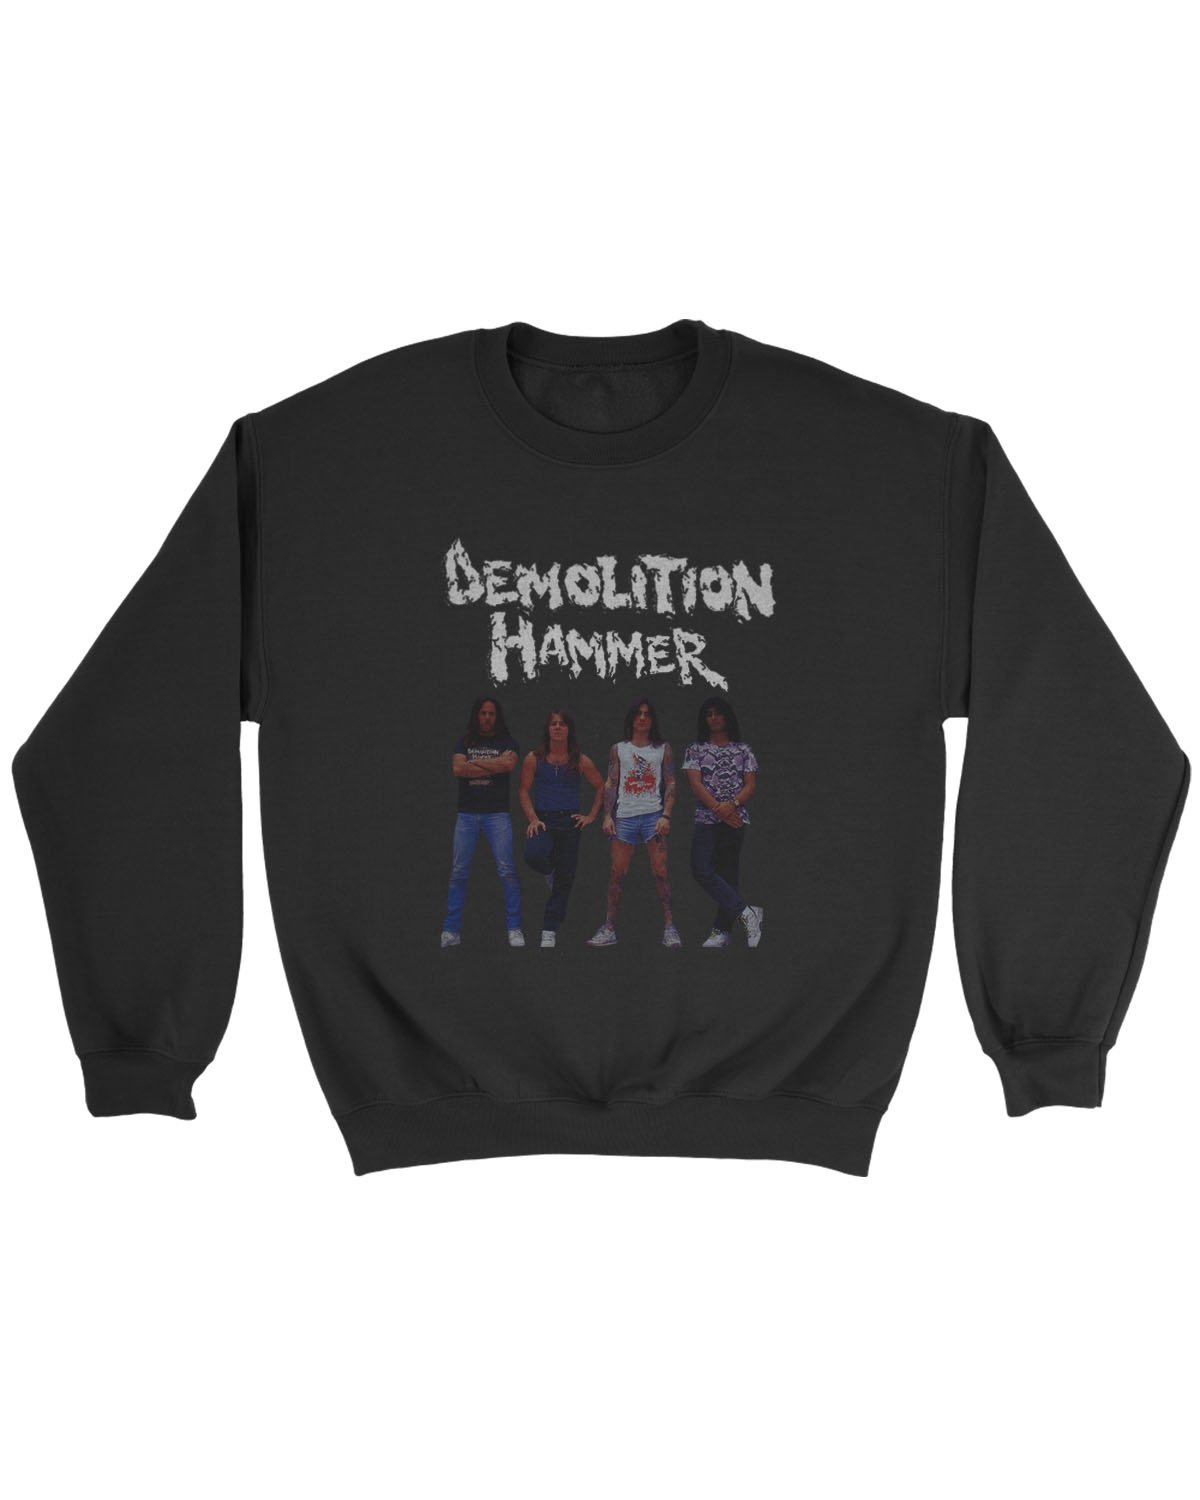 Demolition Hammer Sweatshirt